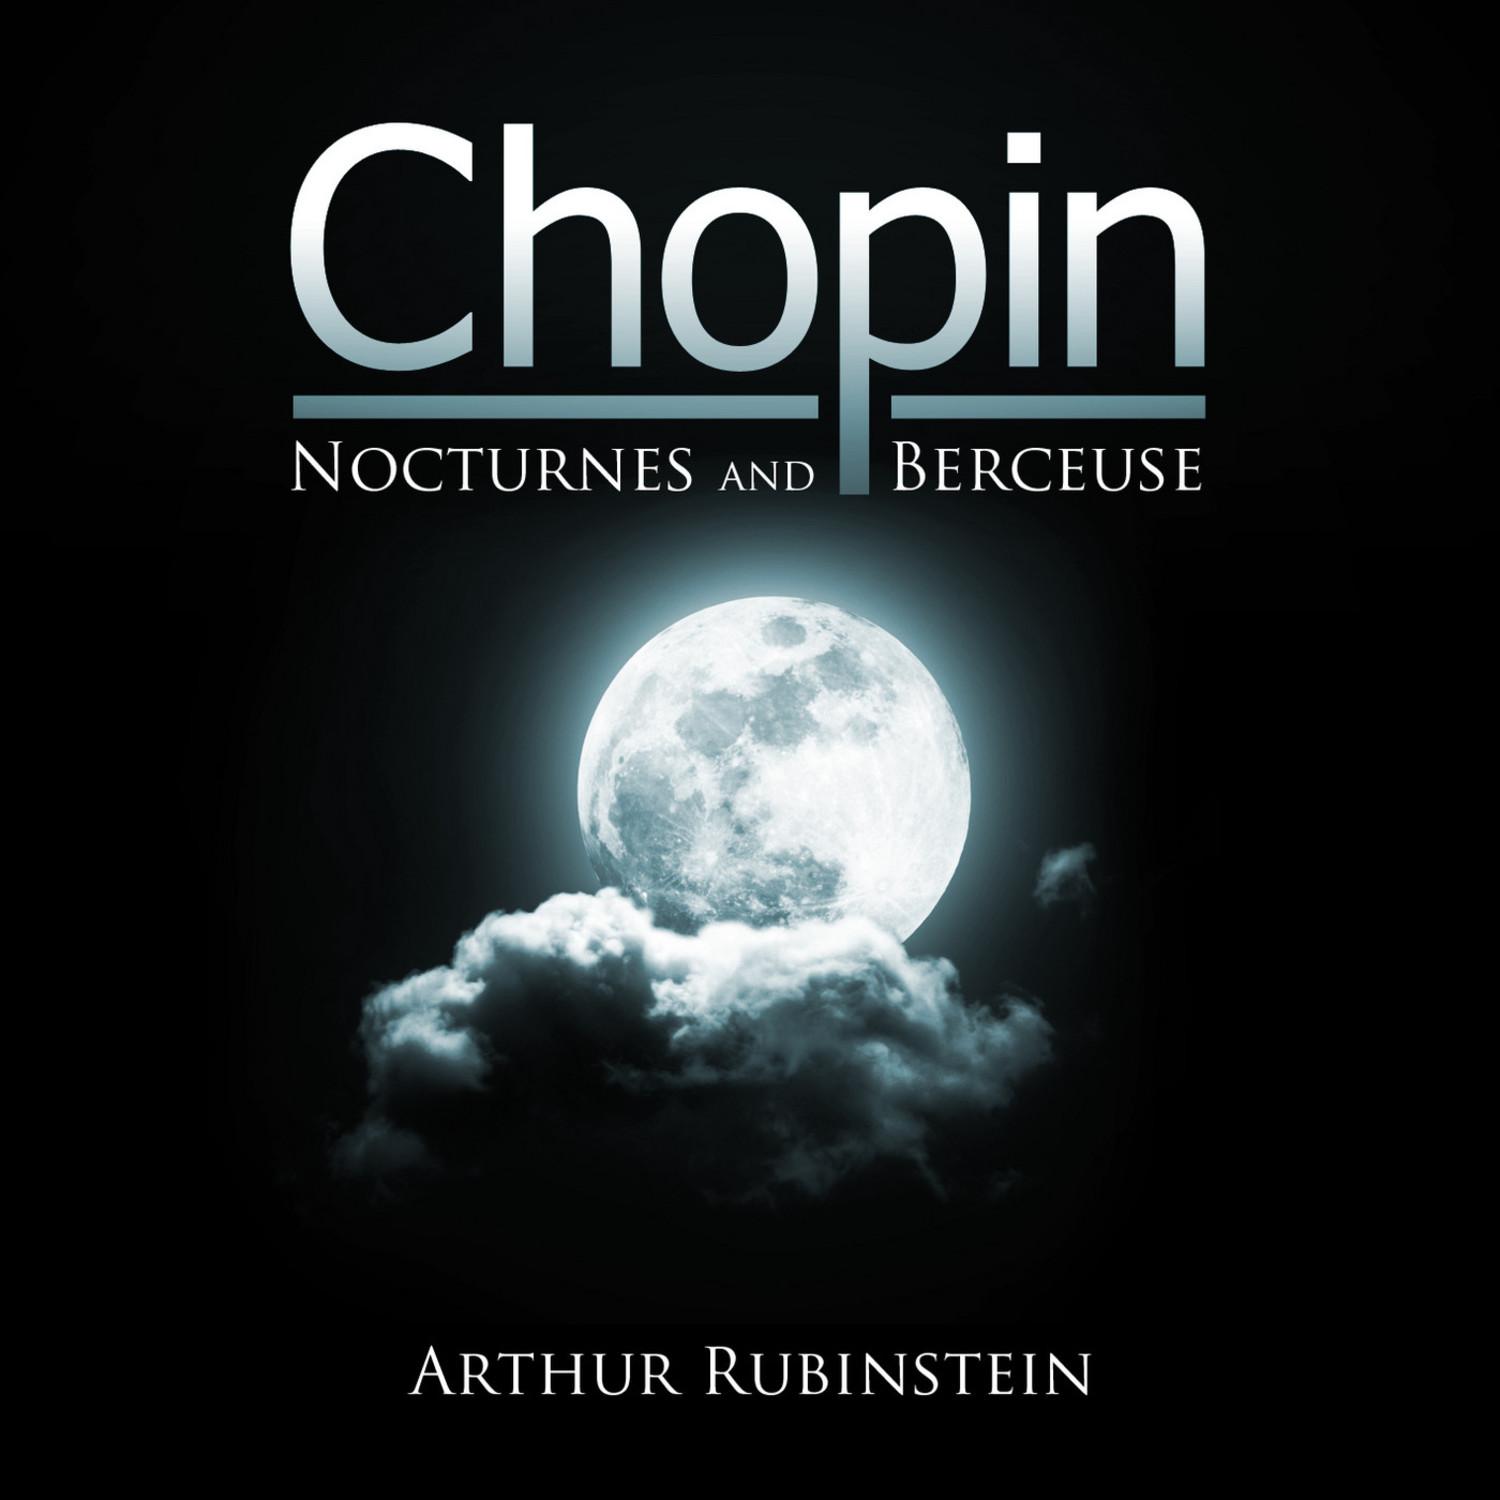 Nocturnes, Op. 9: No. 3 in B Major